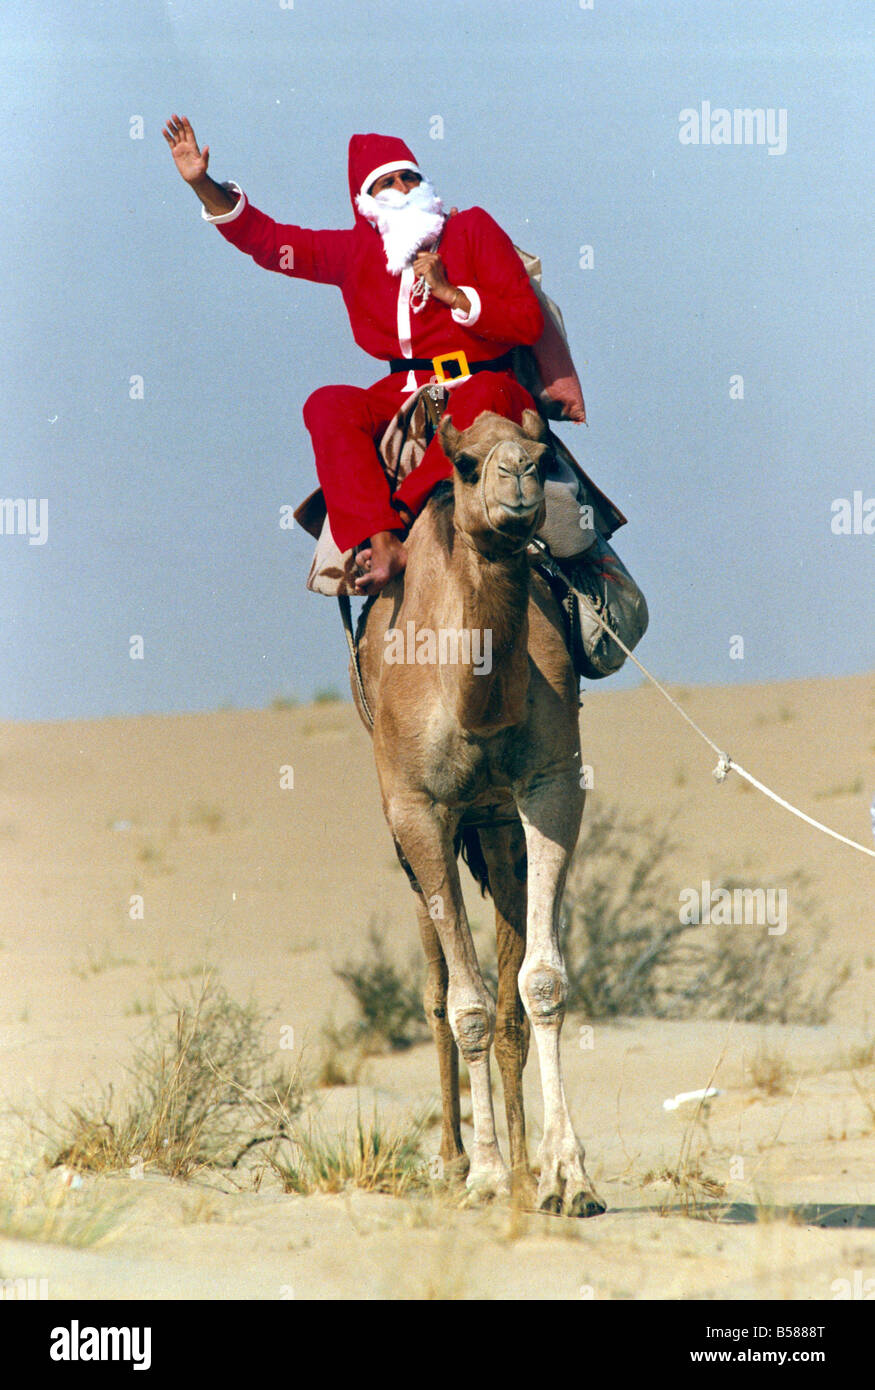 Santa Claus Wellen aus auf seinem Kamel in der Wüste auf dem Weg zum Übermitteln einer Nachricht an britische Truppen in der Golfregion während des Krieges Dezember 1990 Mirrorpix Stockfoto